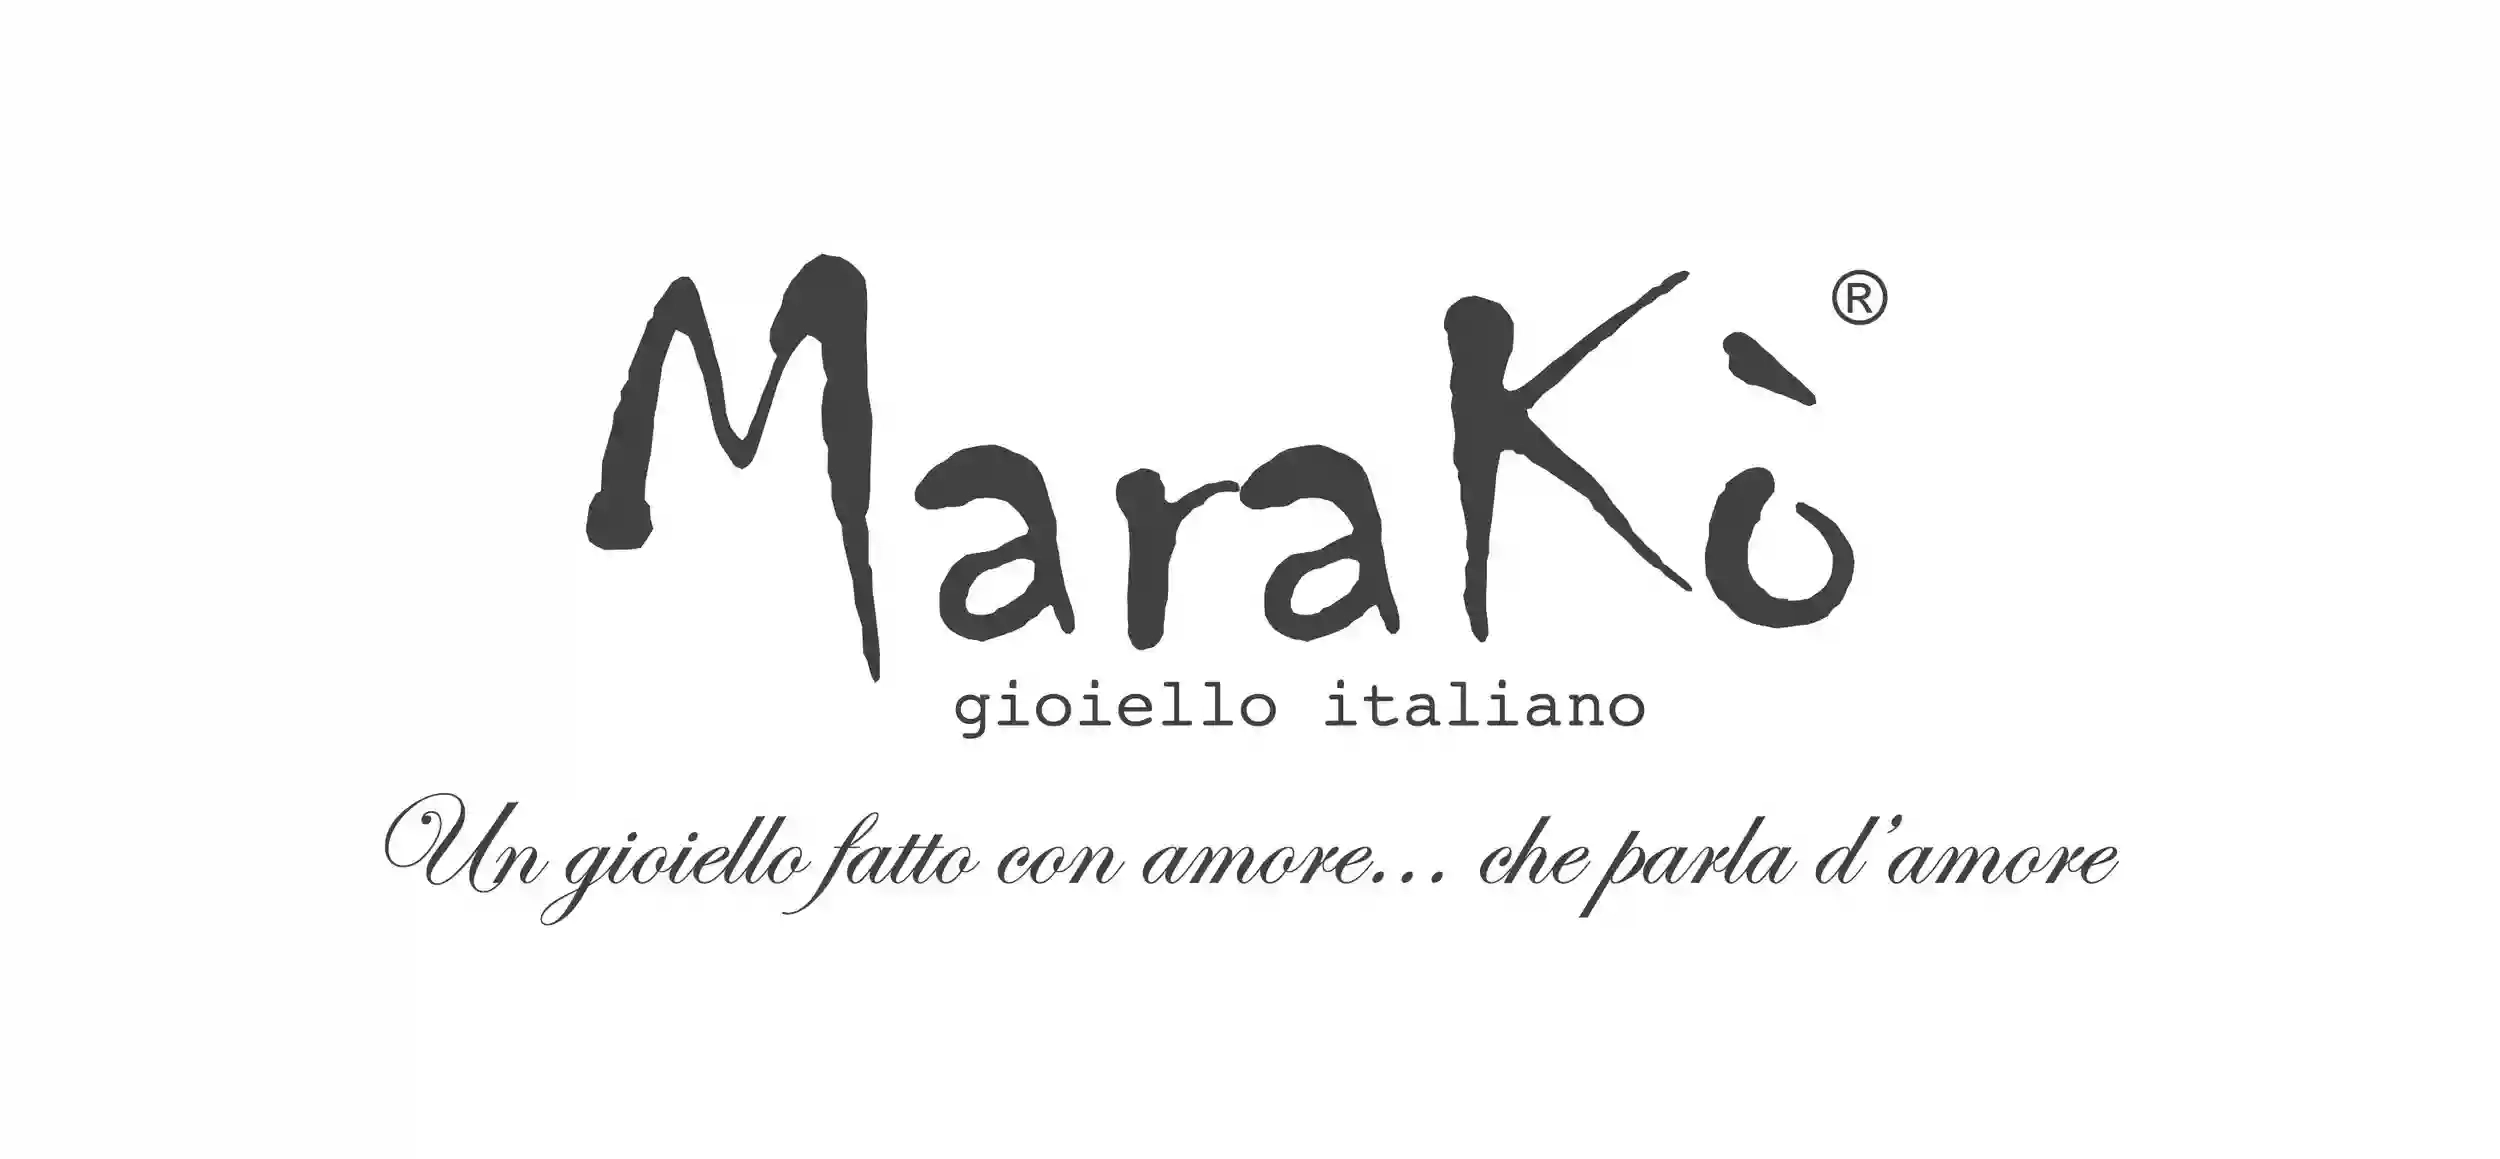 Marakò Gioiello Italiano